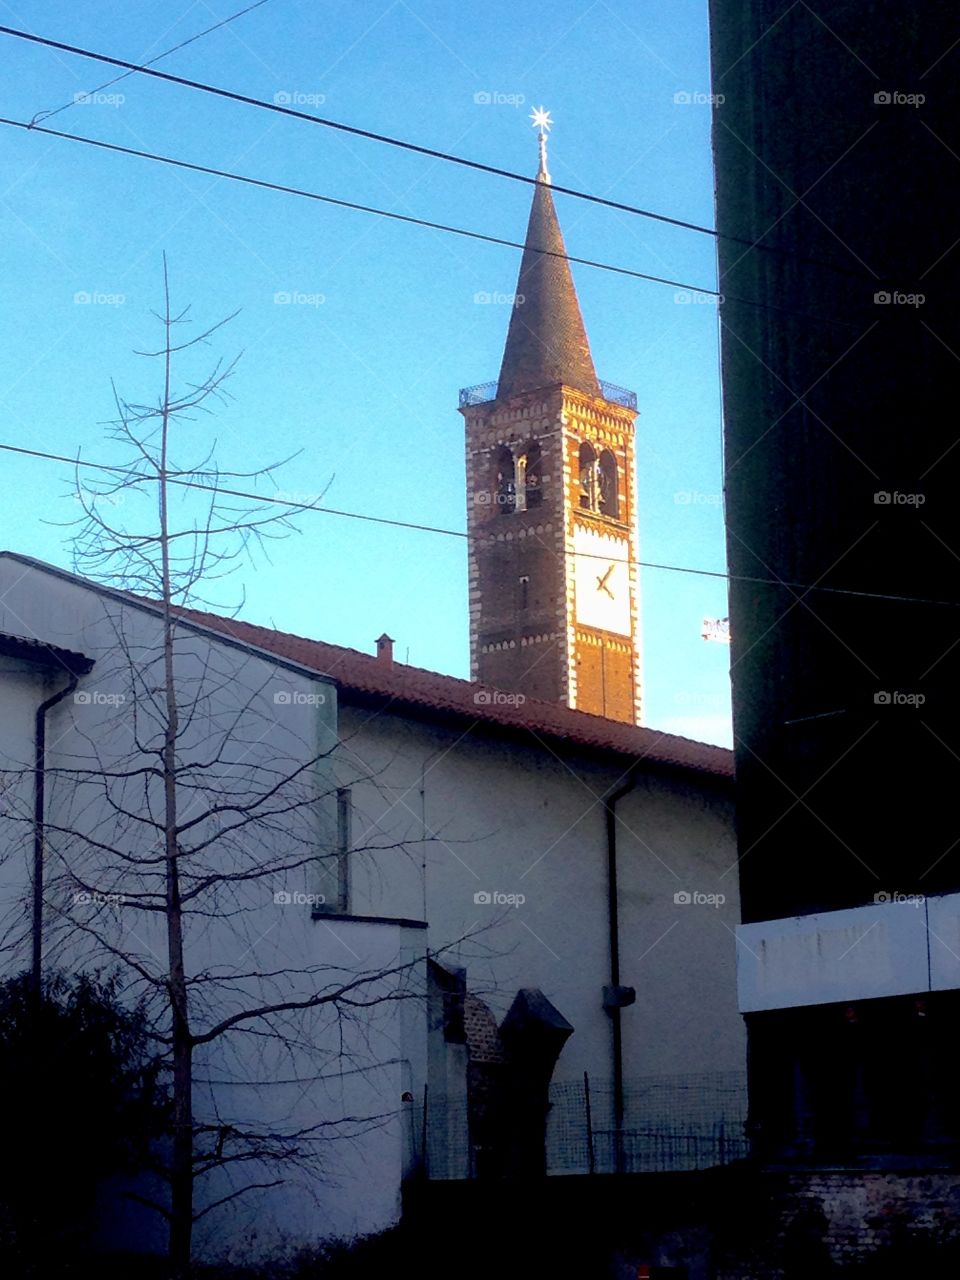 S. Eustorgio bell tower, Milano, Italy 